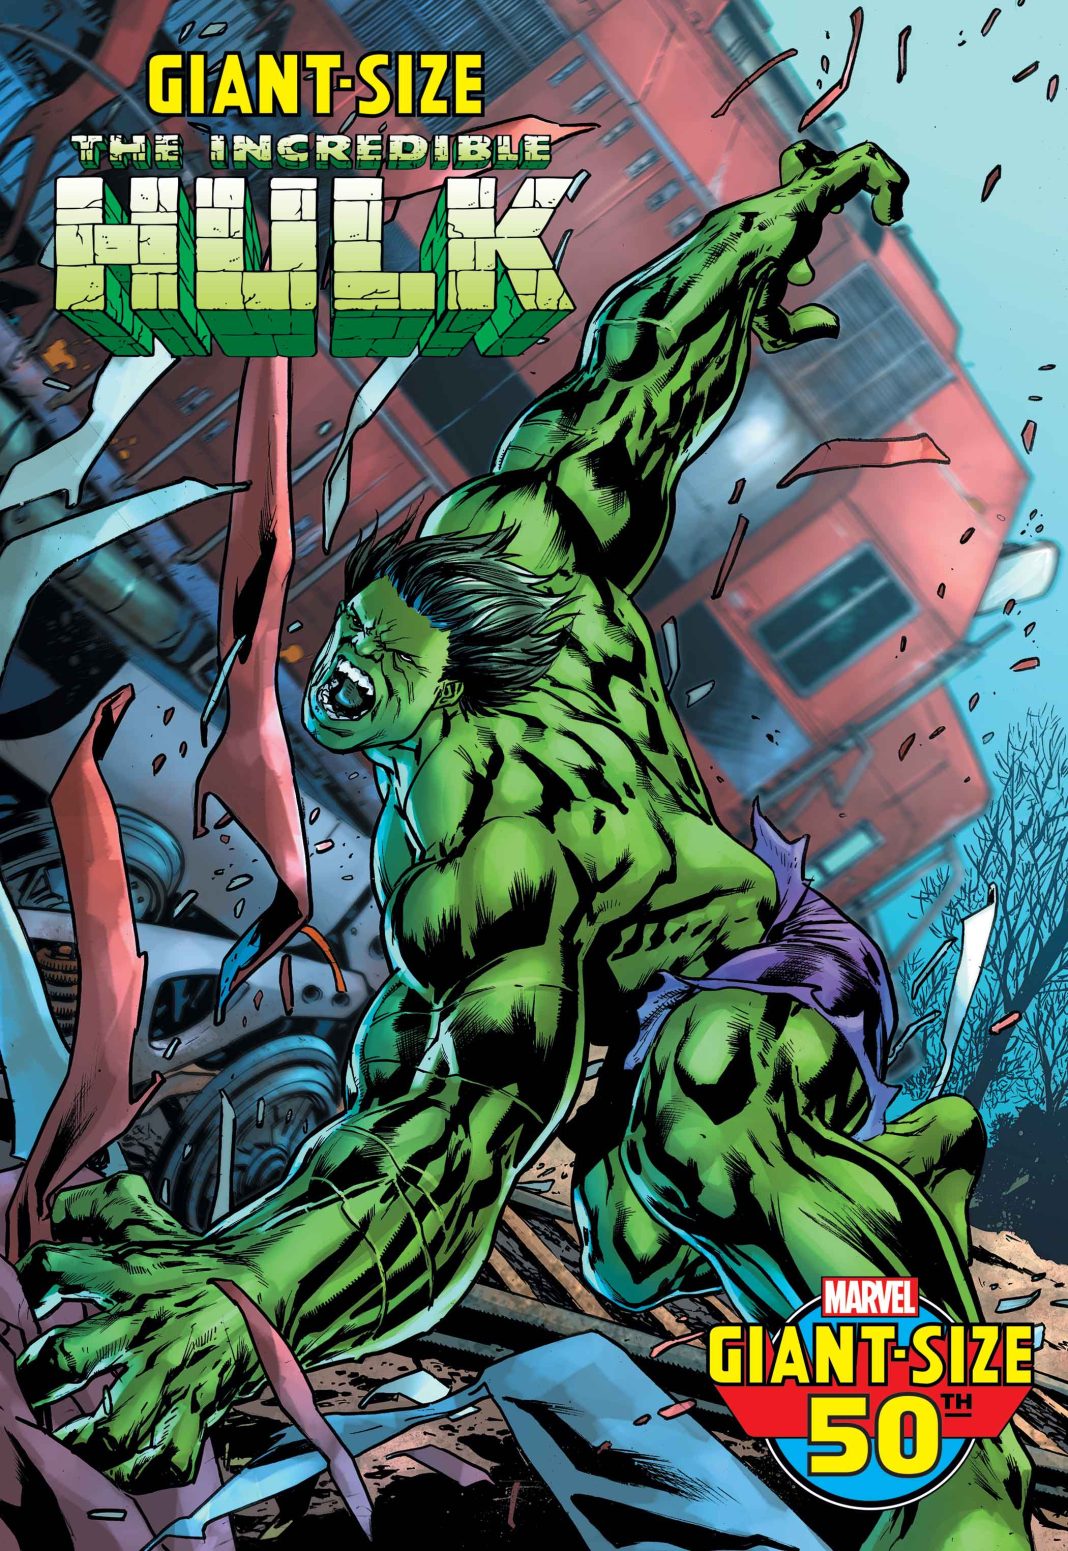 Giant Sized Hulk #1